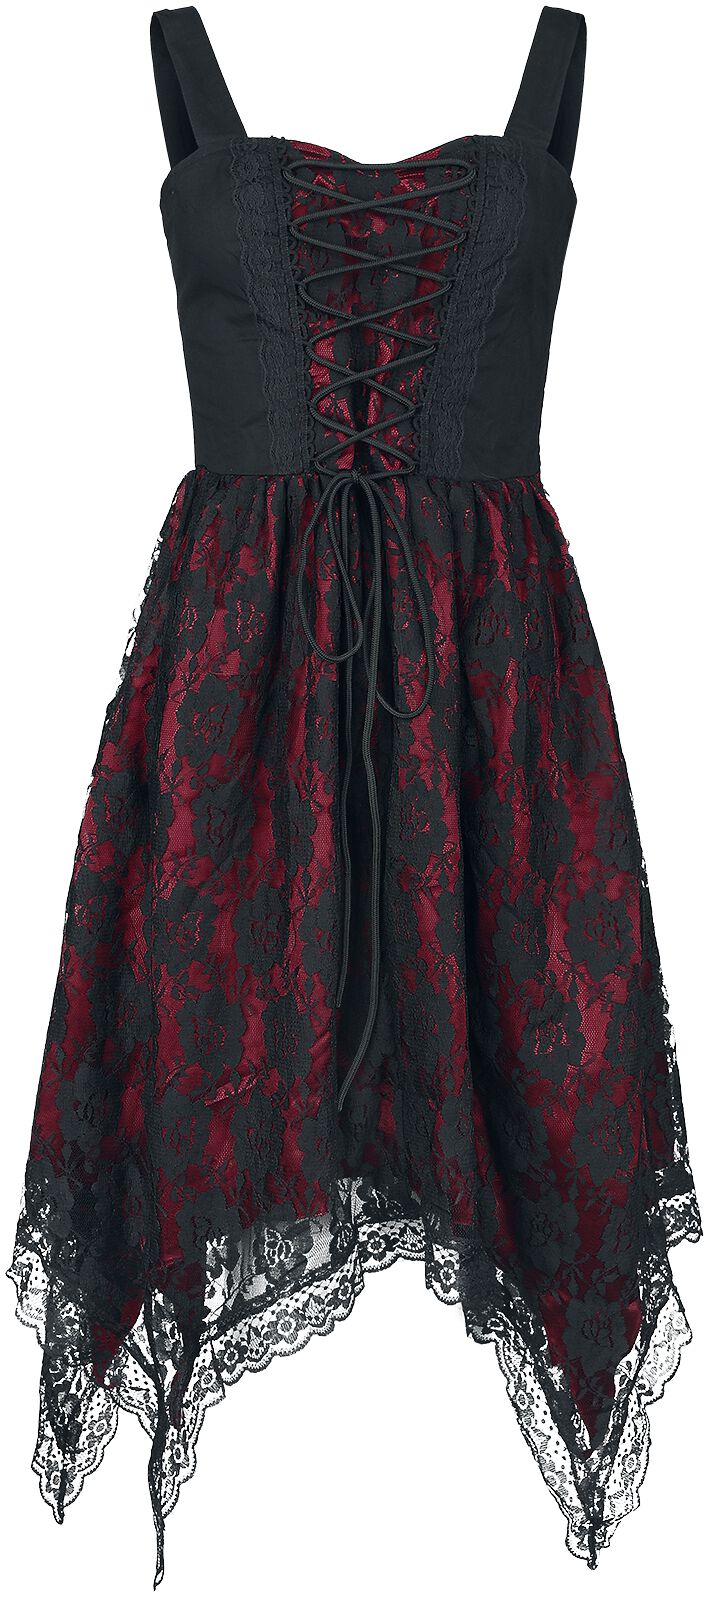 Gothicana by EMP Kleid mit Spitze und Zipfelsaum Kurzes Kleid schwarz rot in XXL